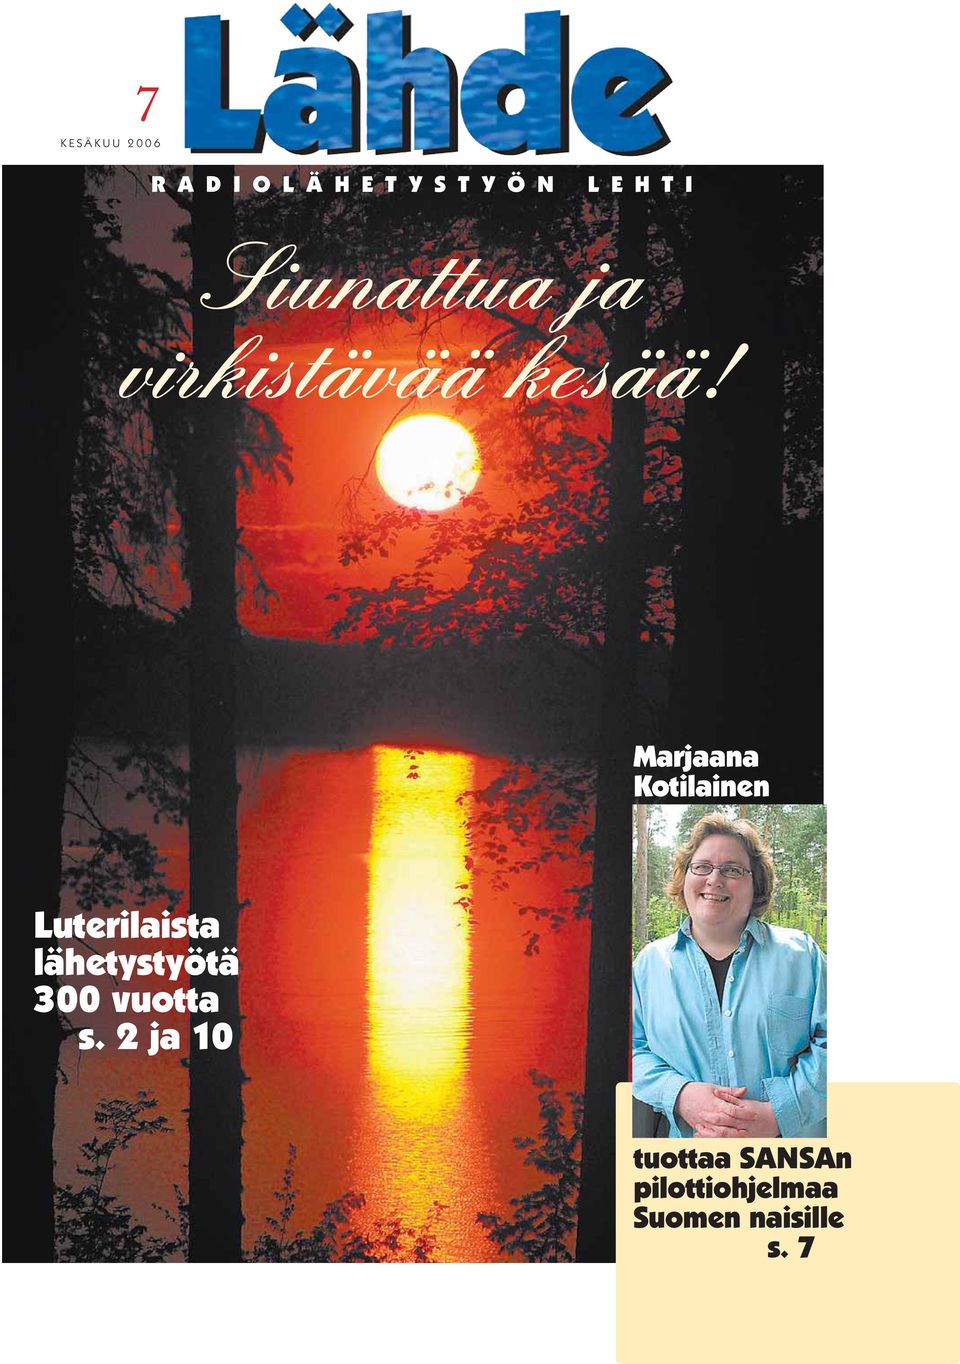 Marjaana Kotilainen Luterilaista lähetystyötä 300